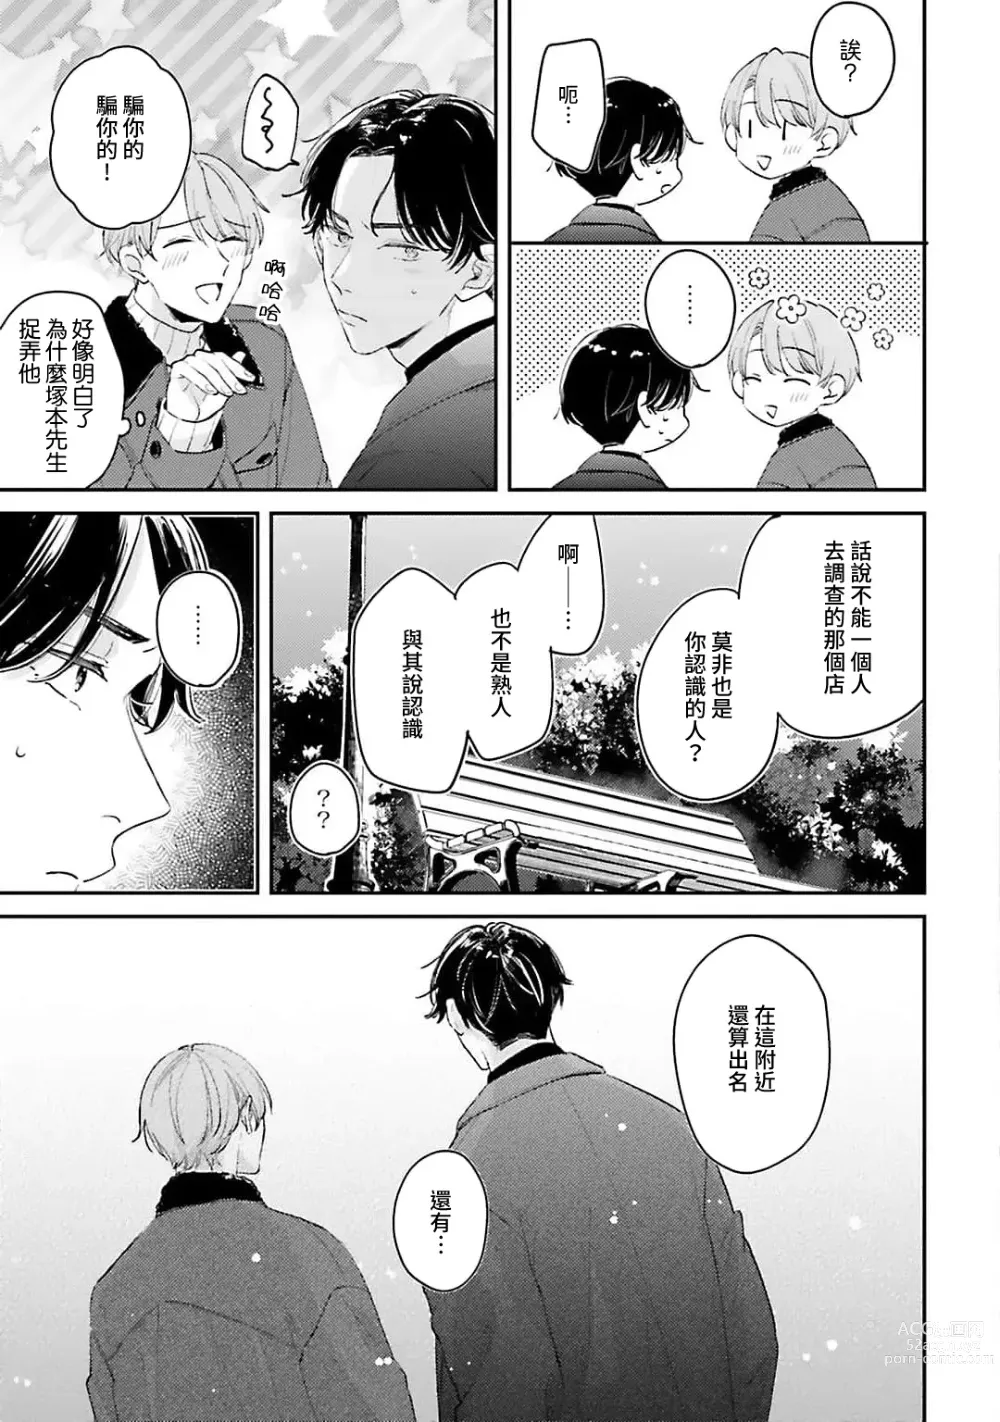 Page 110 of manga 绽放的恋爱皆为醉与甜1